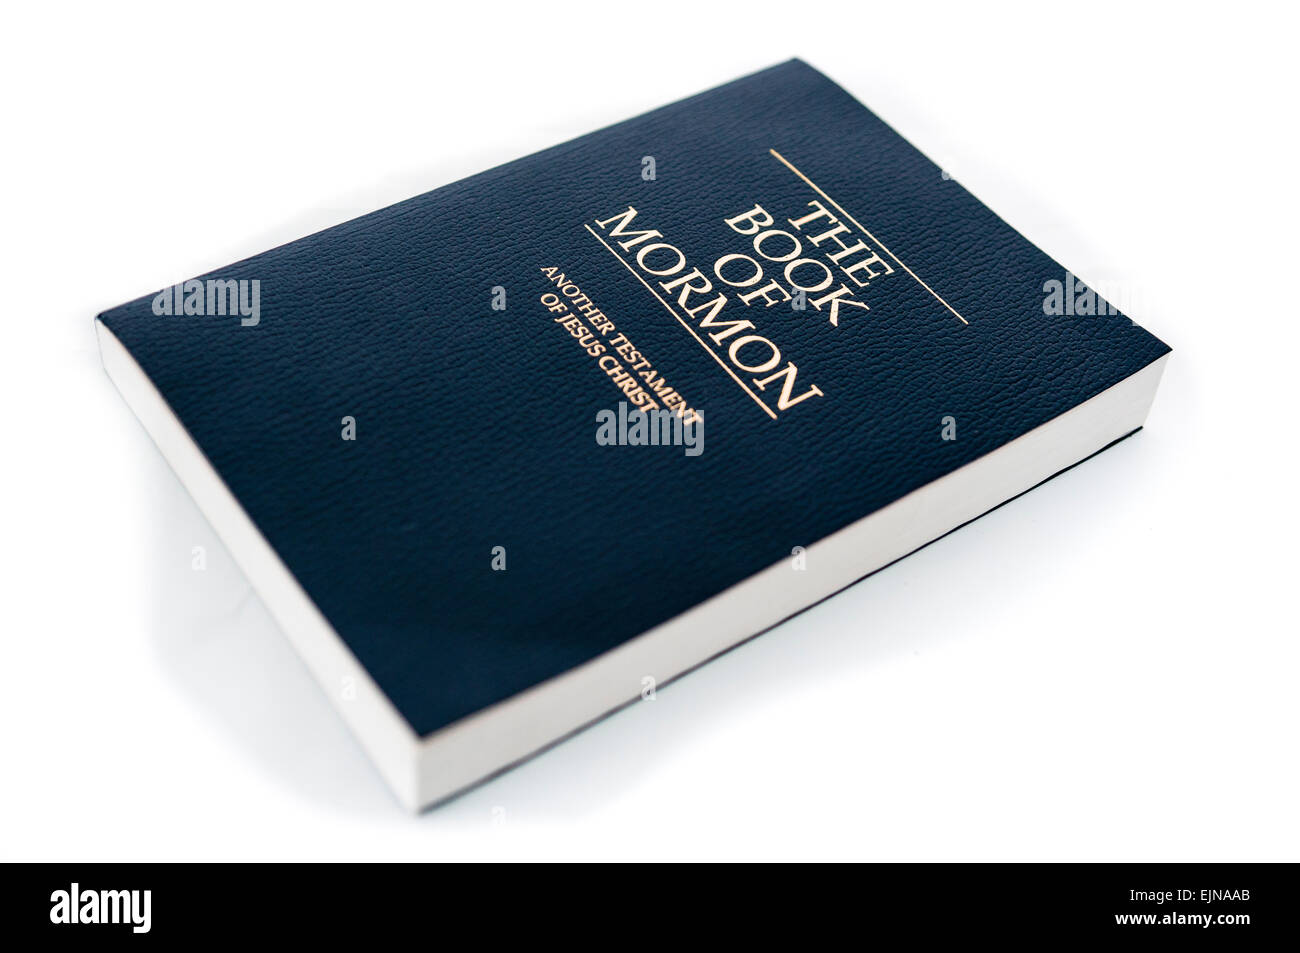 Le Livre de Mormon Banque D'Images